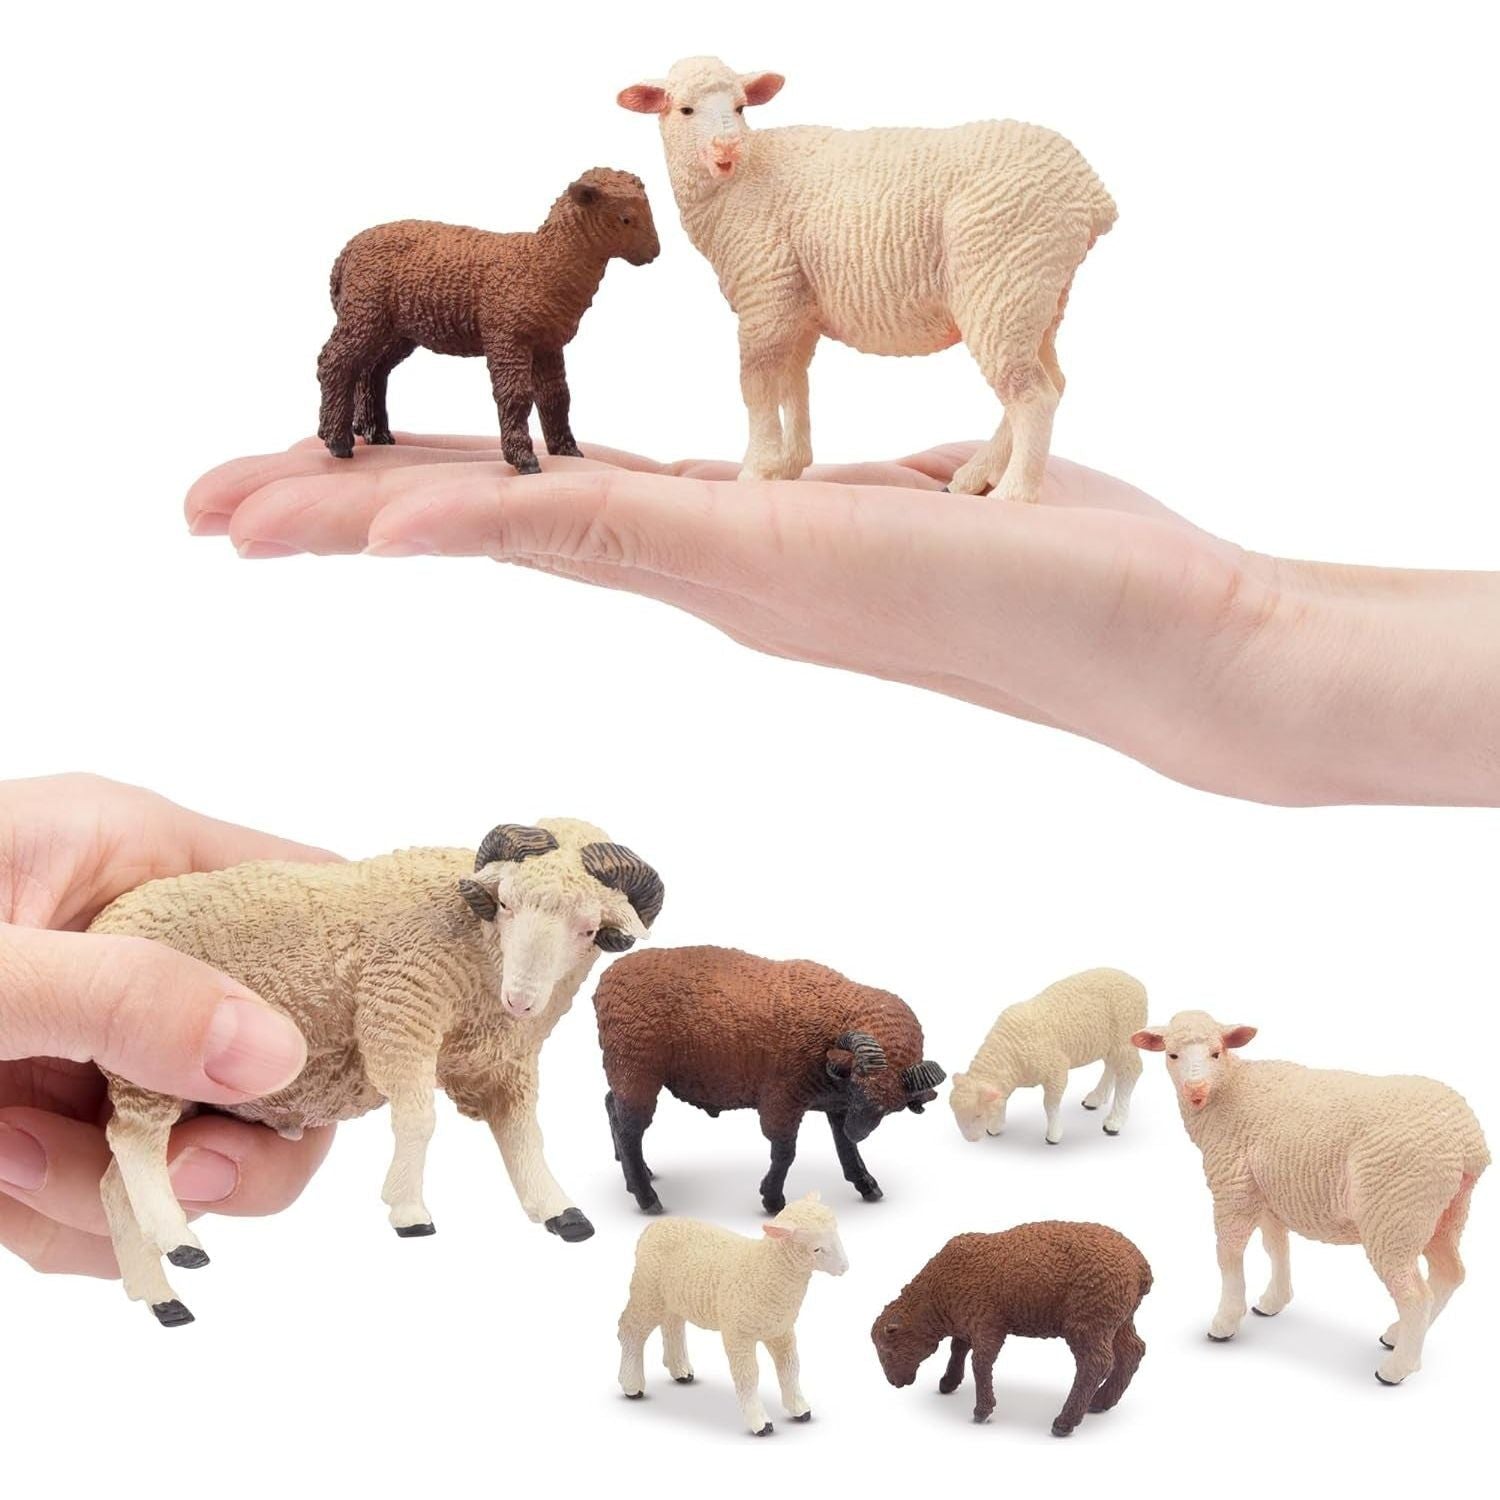 Sheep Family Animal Figures